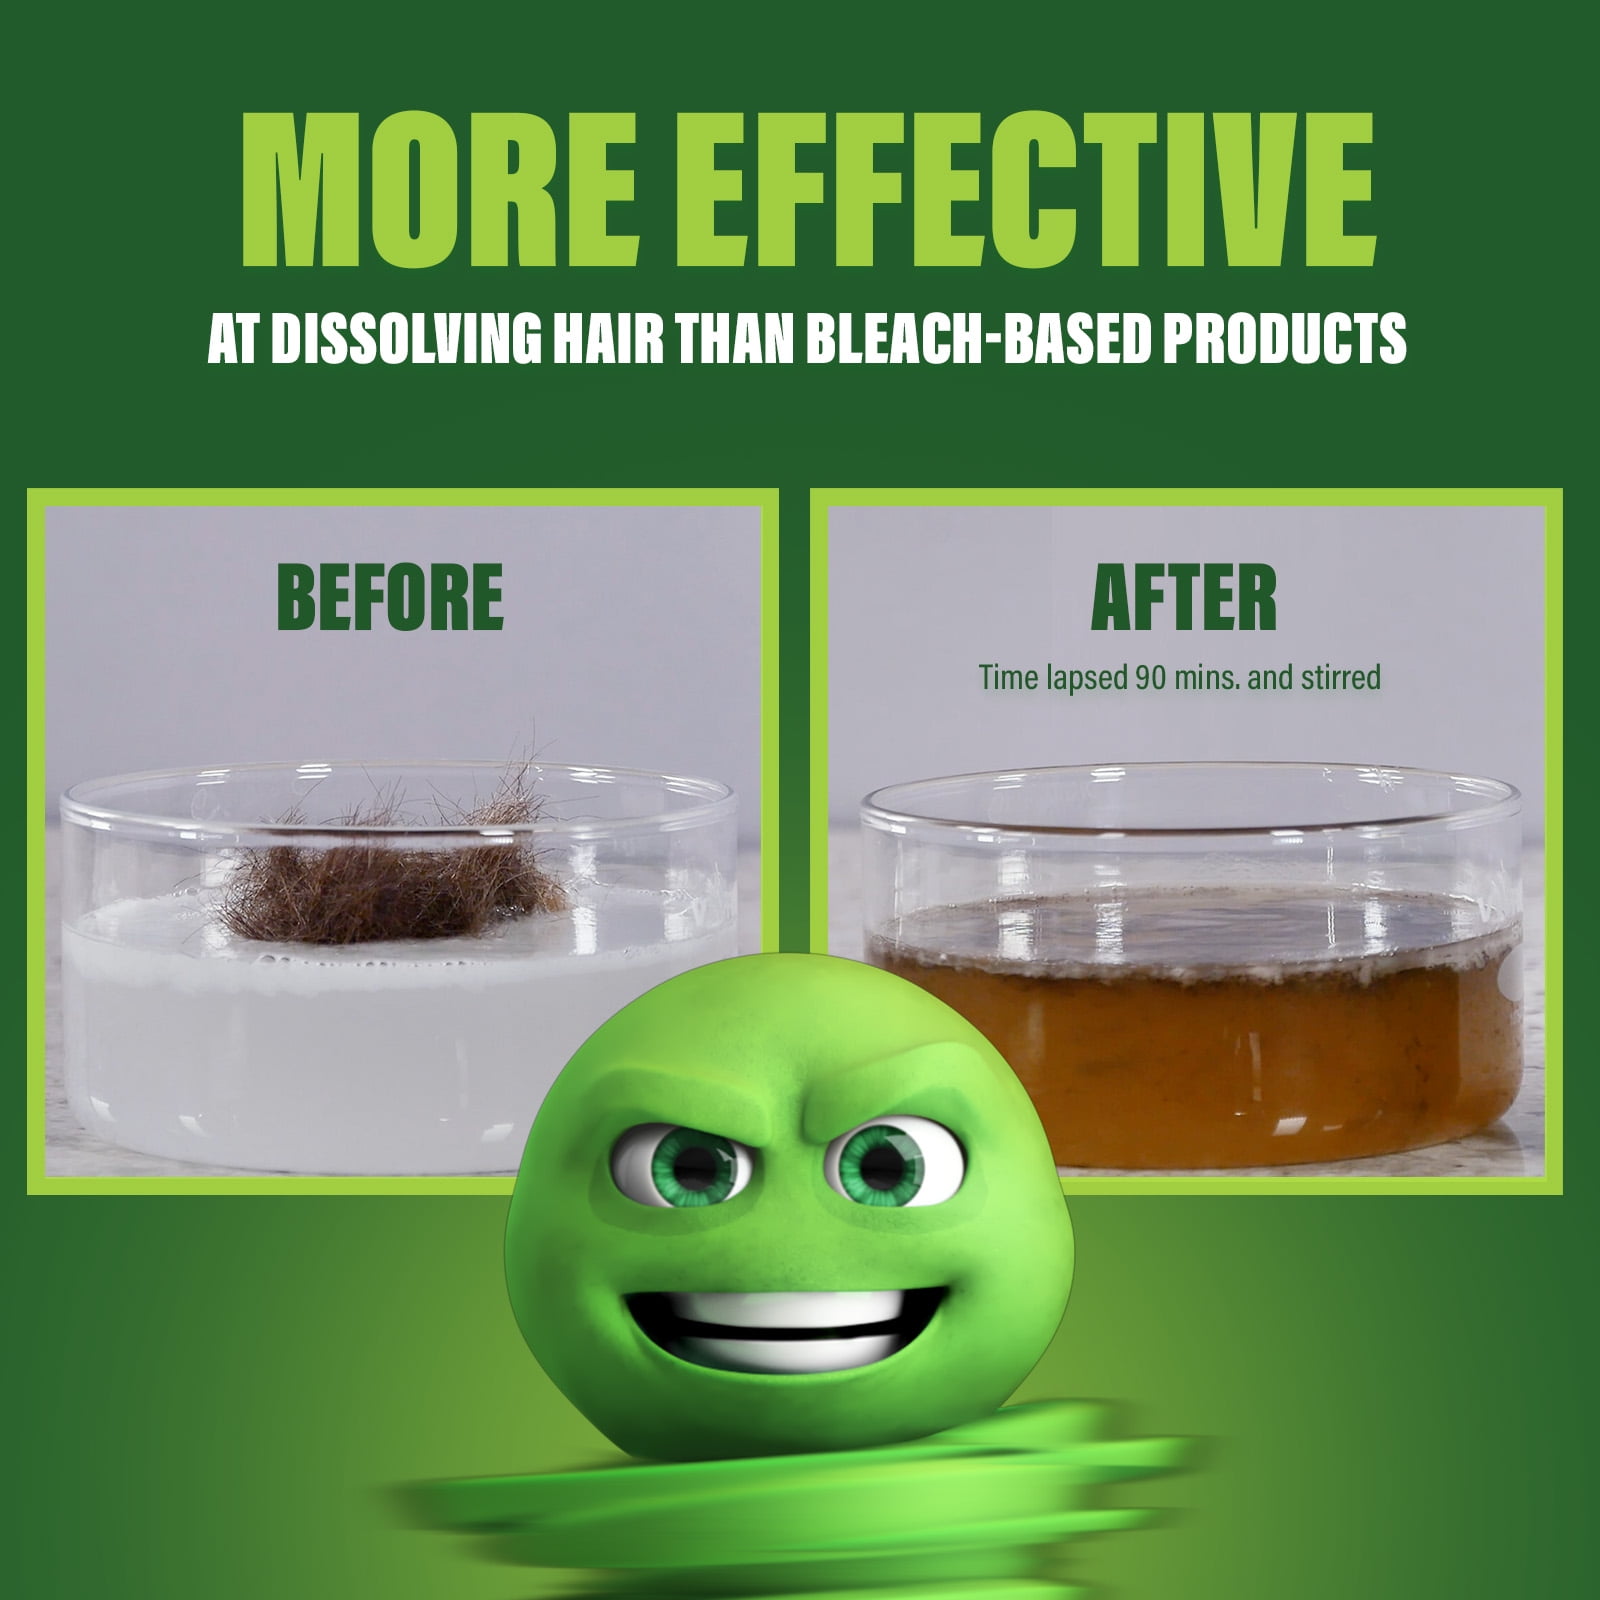 Green Gobbler Drain Clog Dissolver - Liquid Hair & Clog Remover - 31 oz - 2  Pack